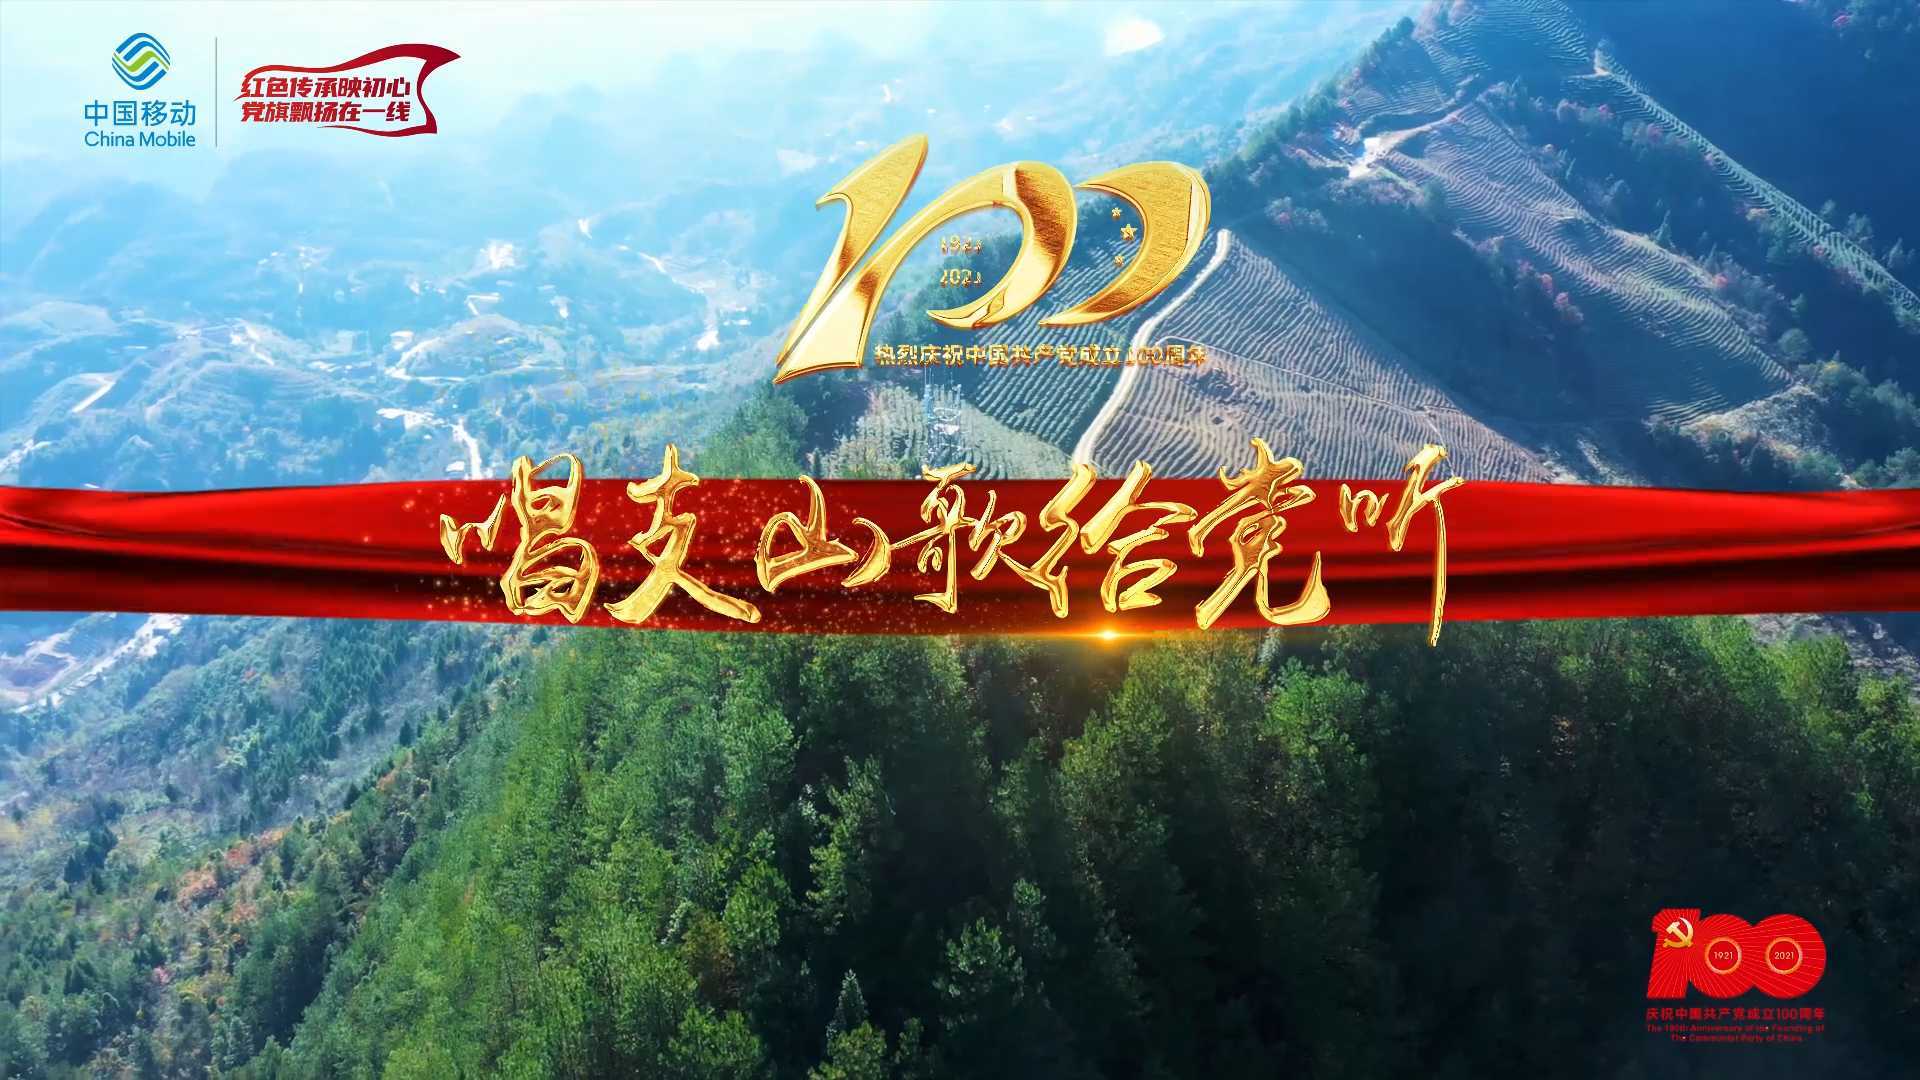 中国移动温州分公司网络部庆祝建党100周年红歌快闪